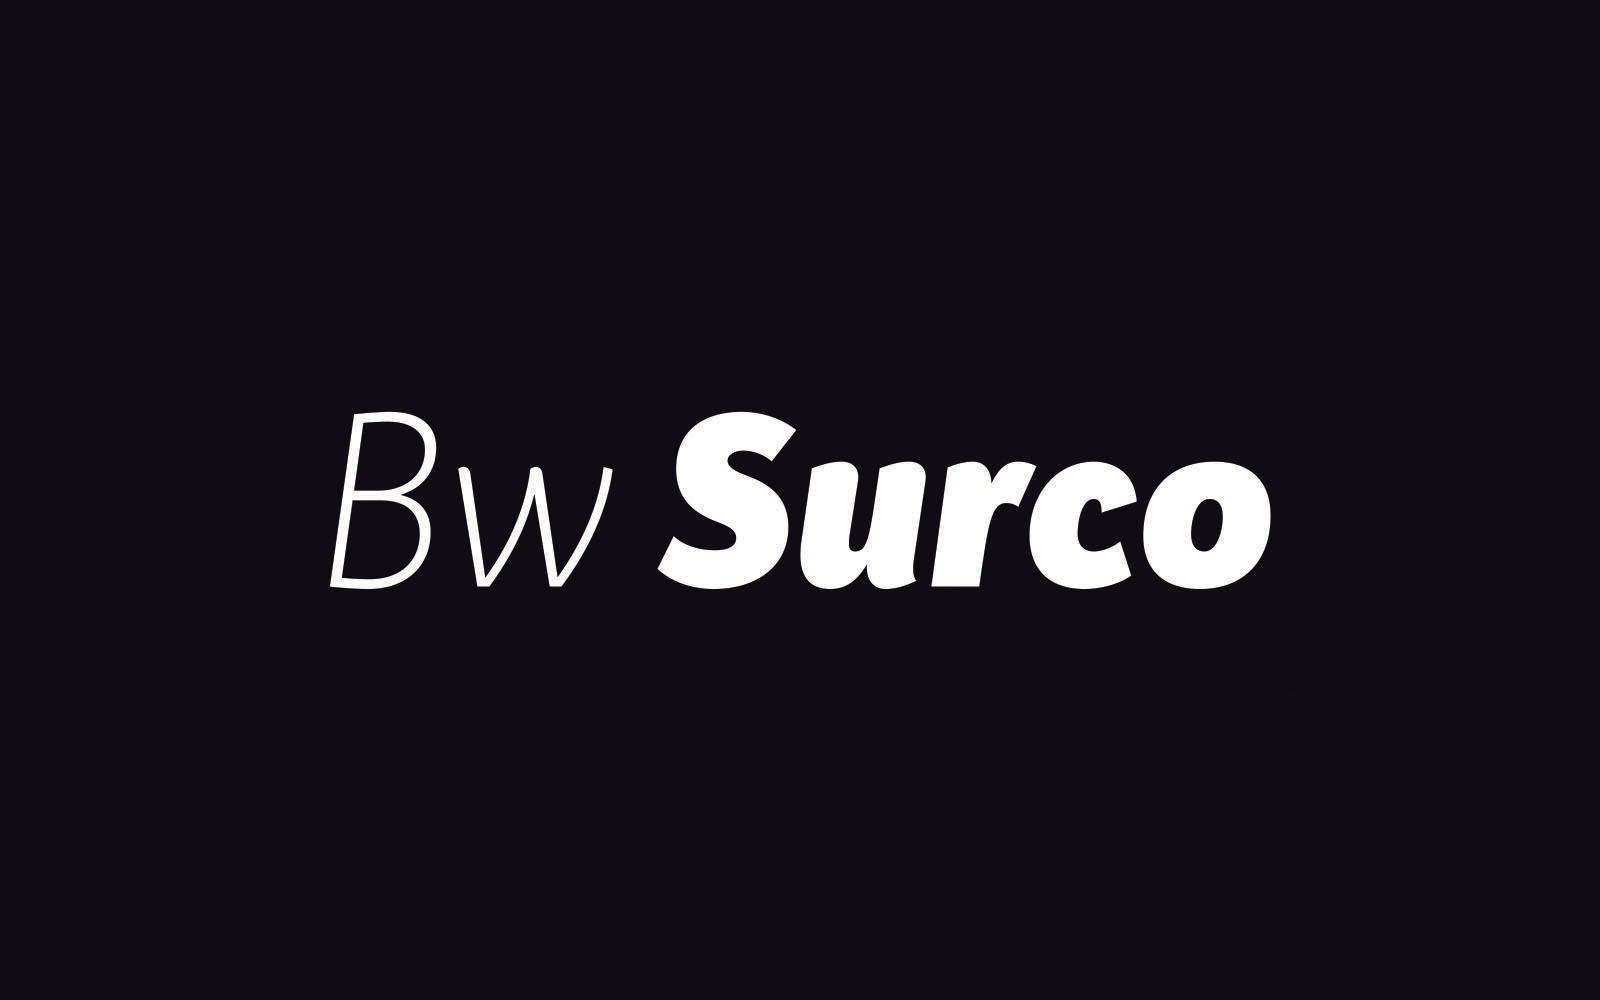 Bw Surco Sans Serif Typeface